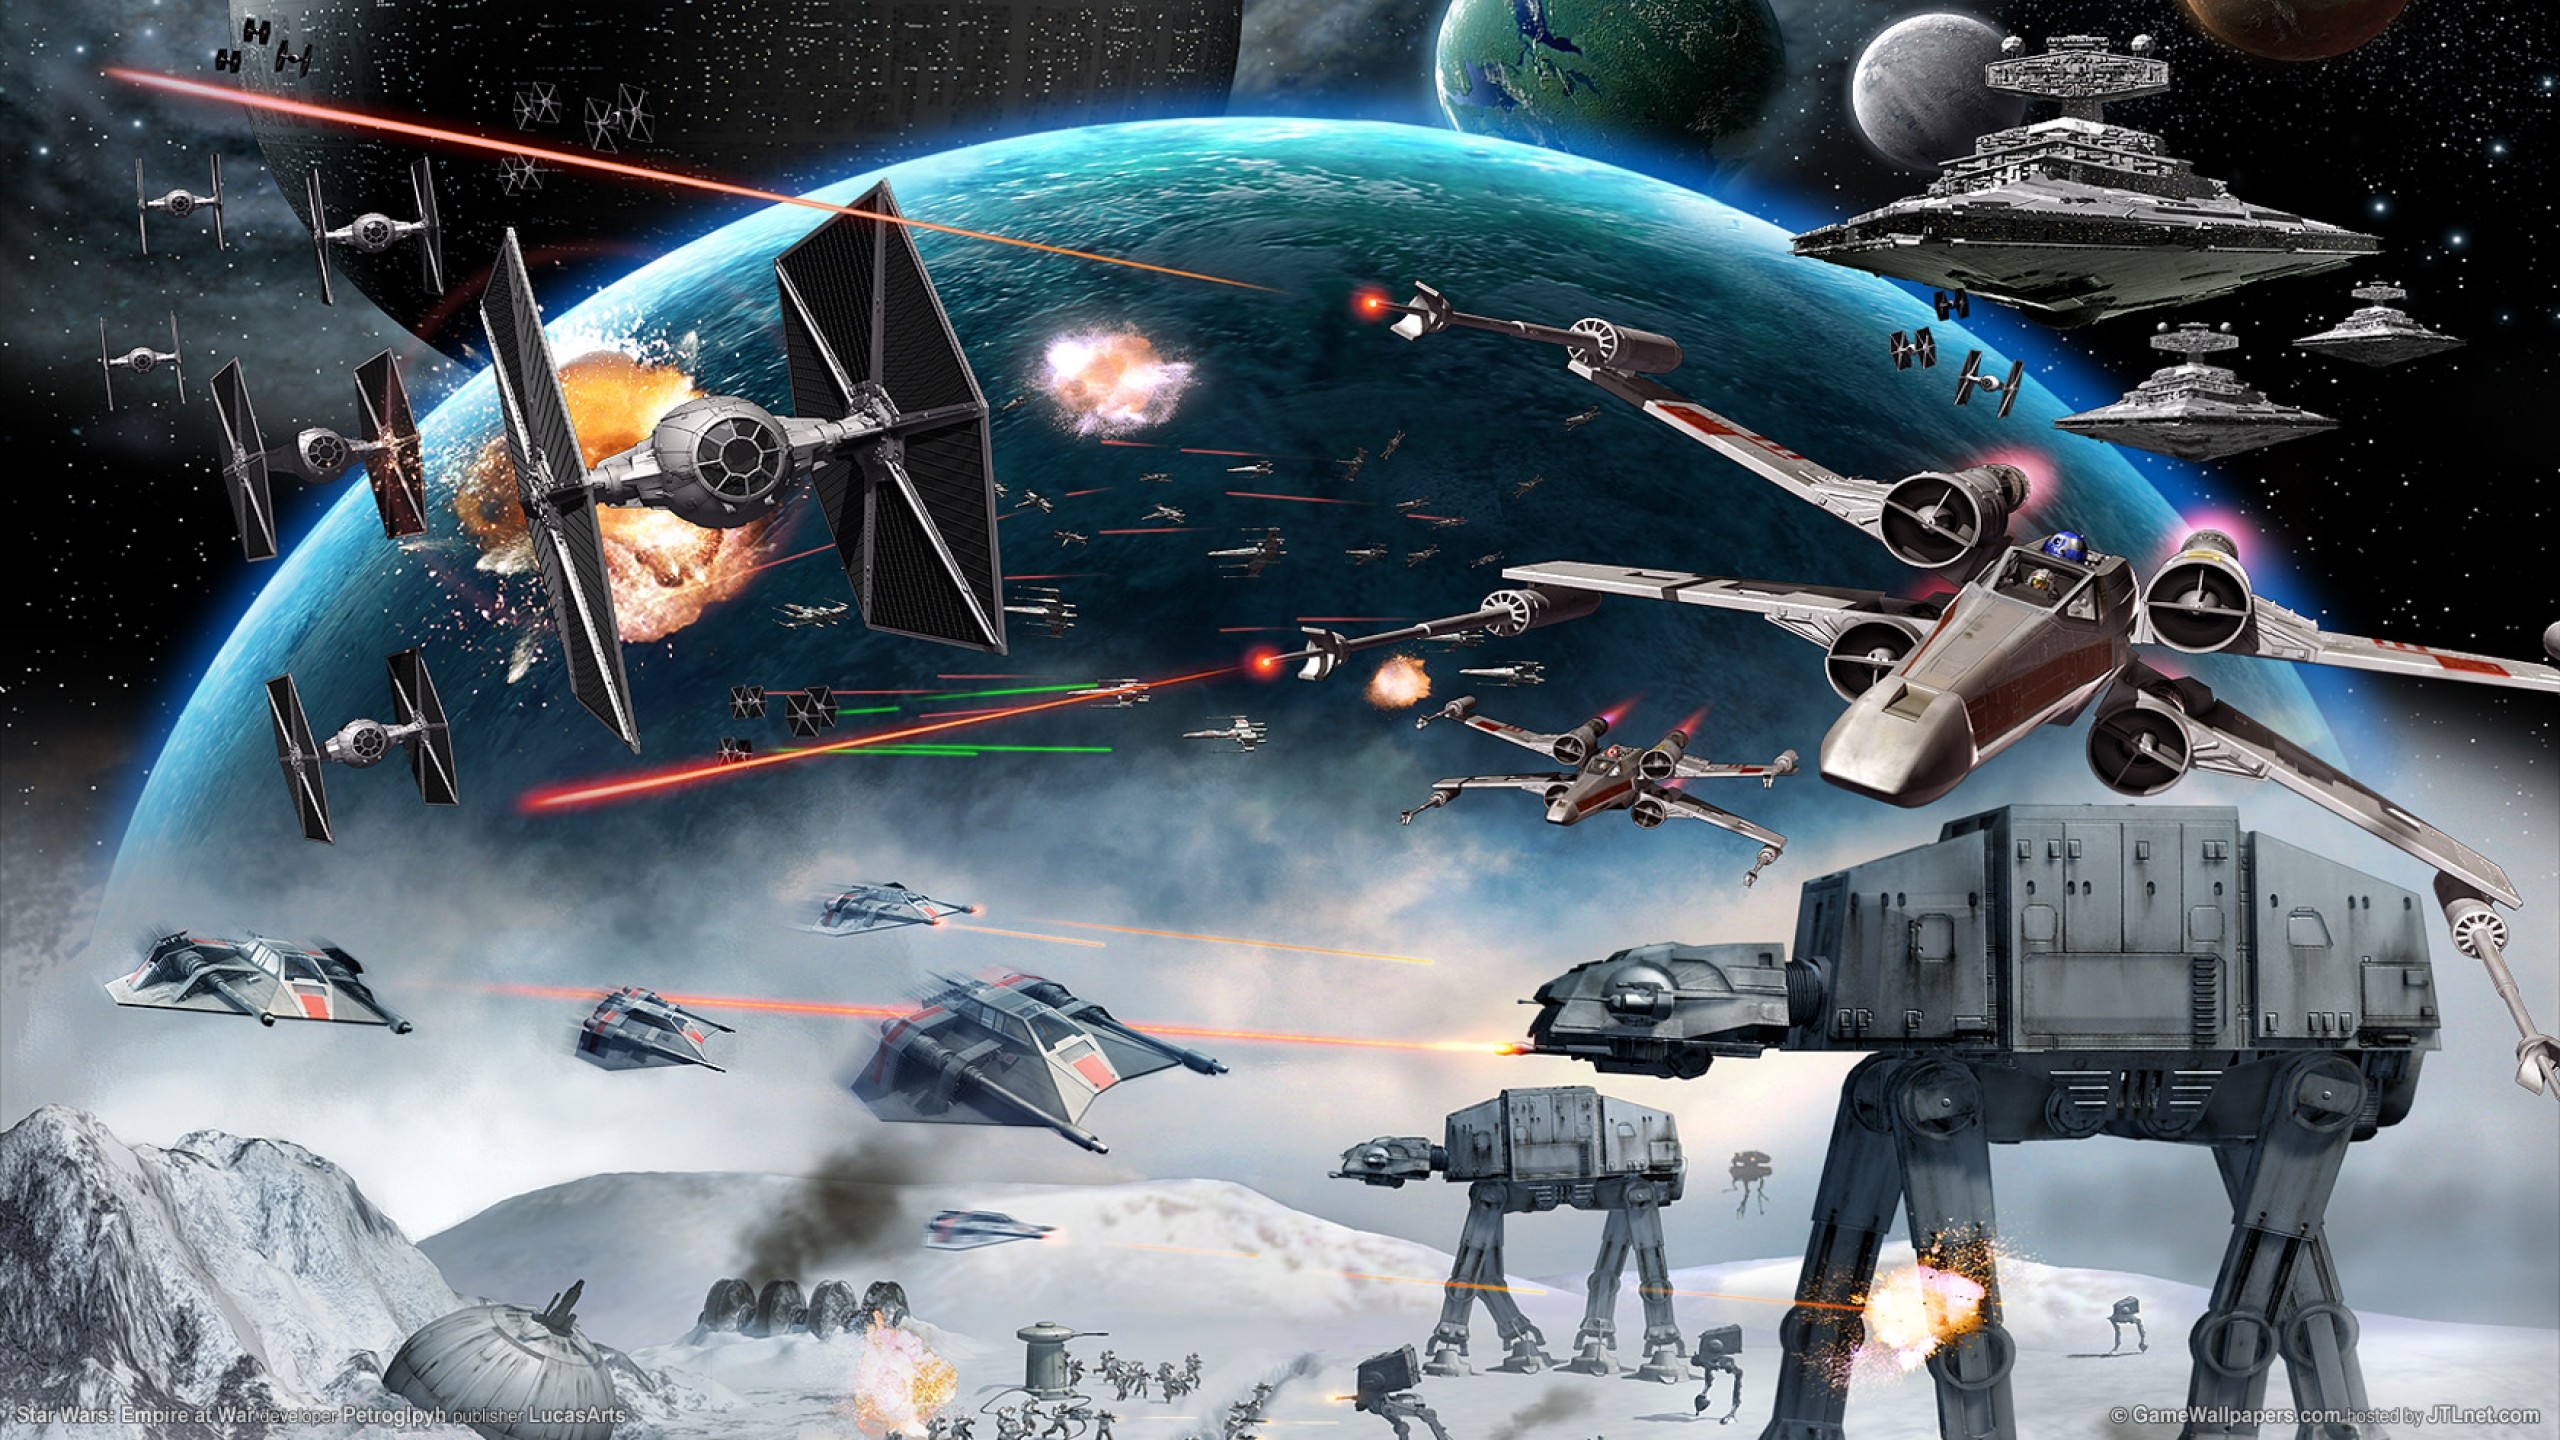 2560x1440 Star Wars Space Battle wallpaper - 1302331